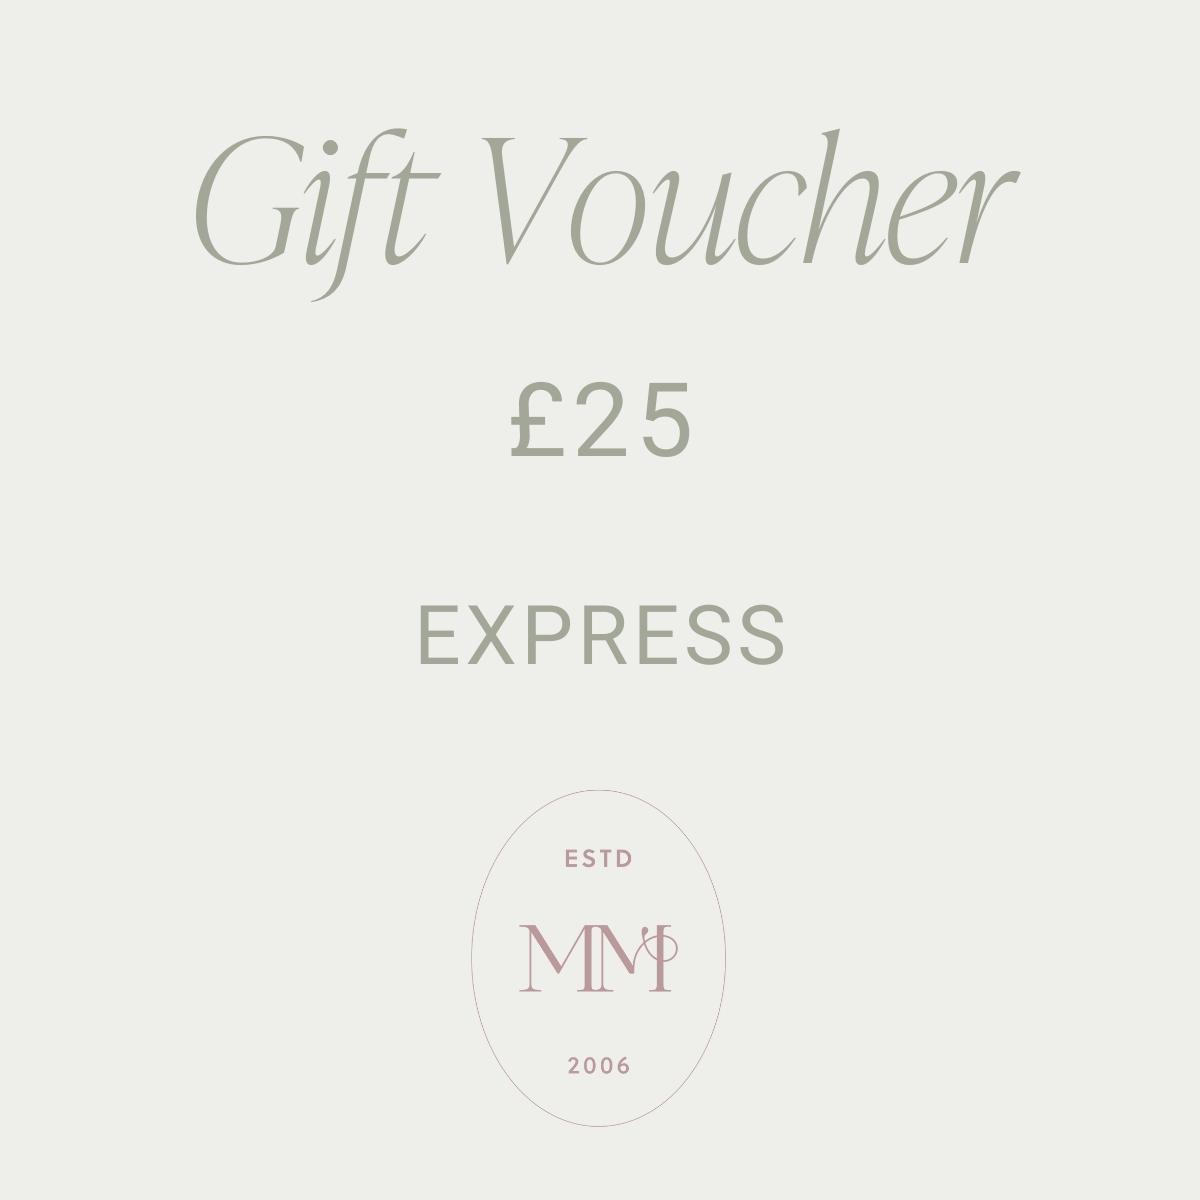 Gift voucher £25.00 : EXPRESS